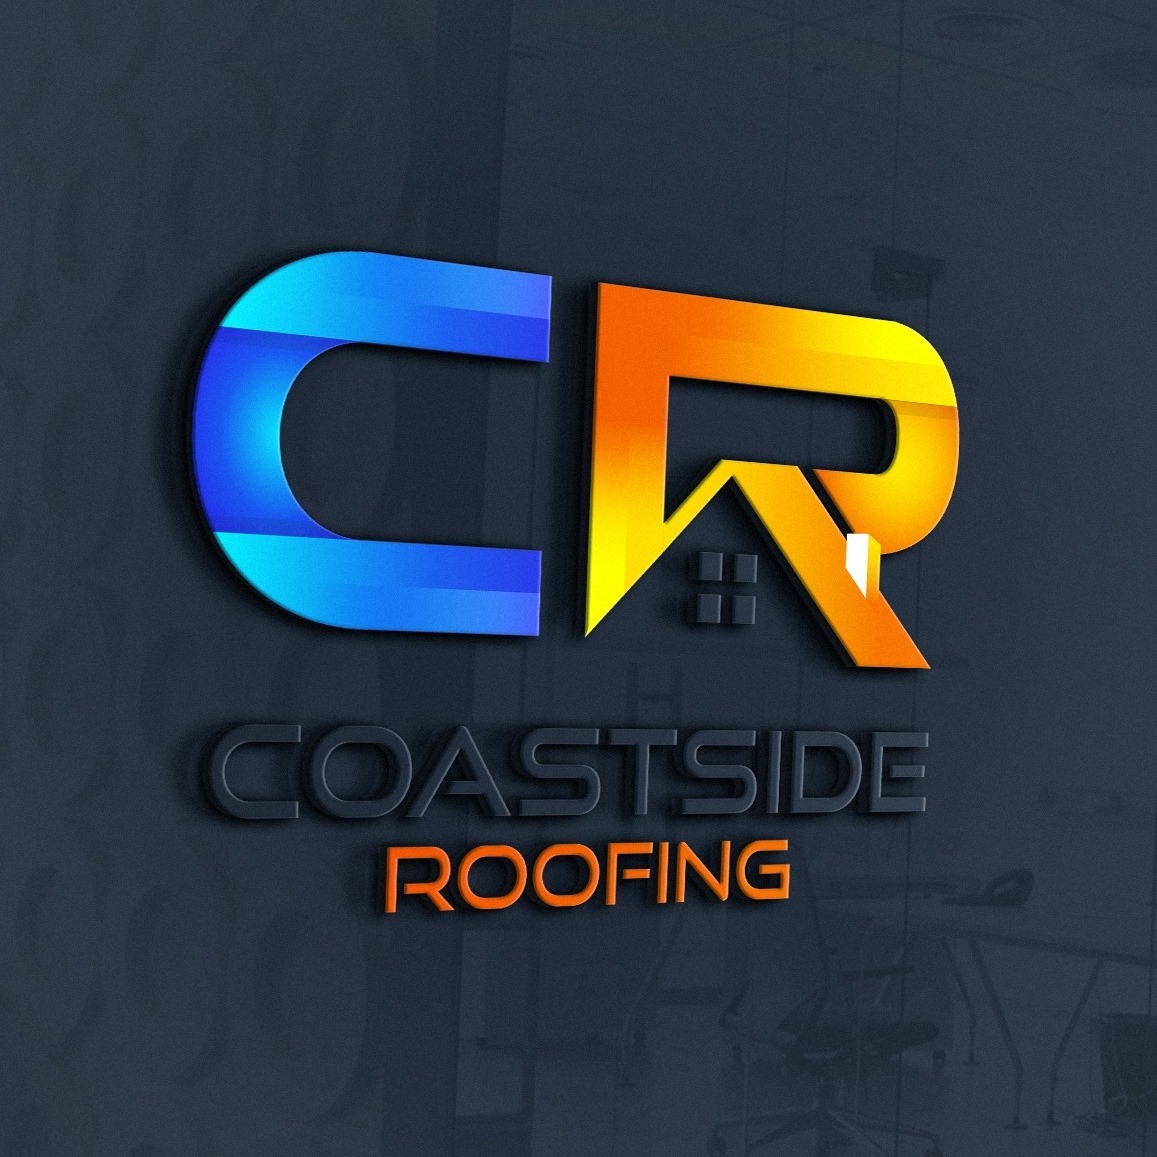 Coastside Roofing